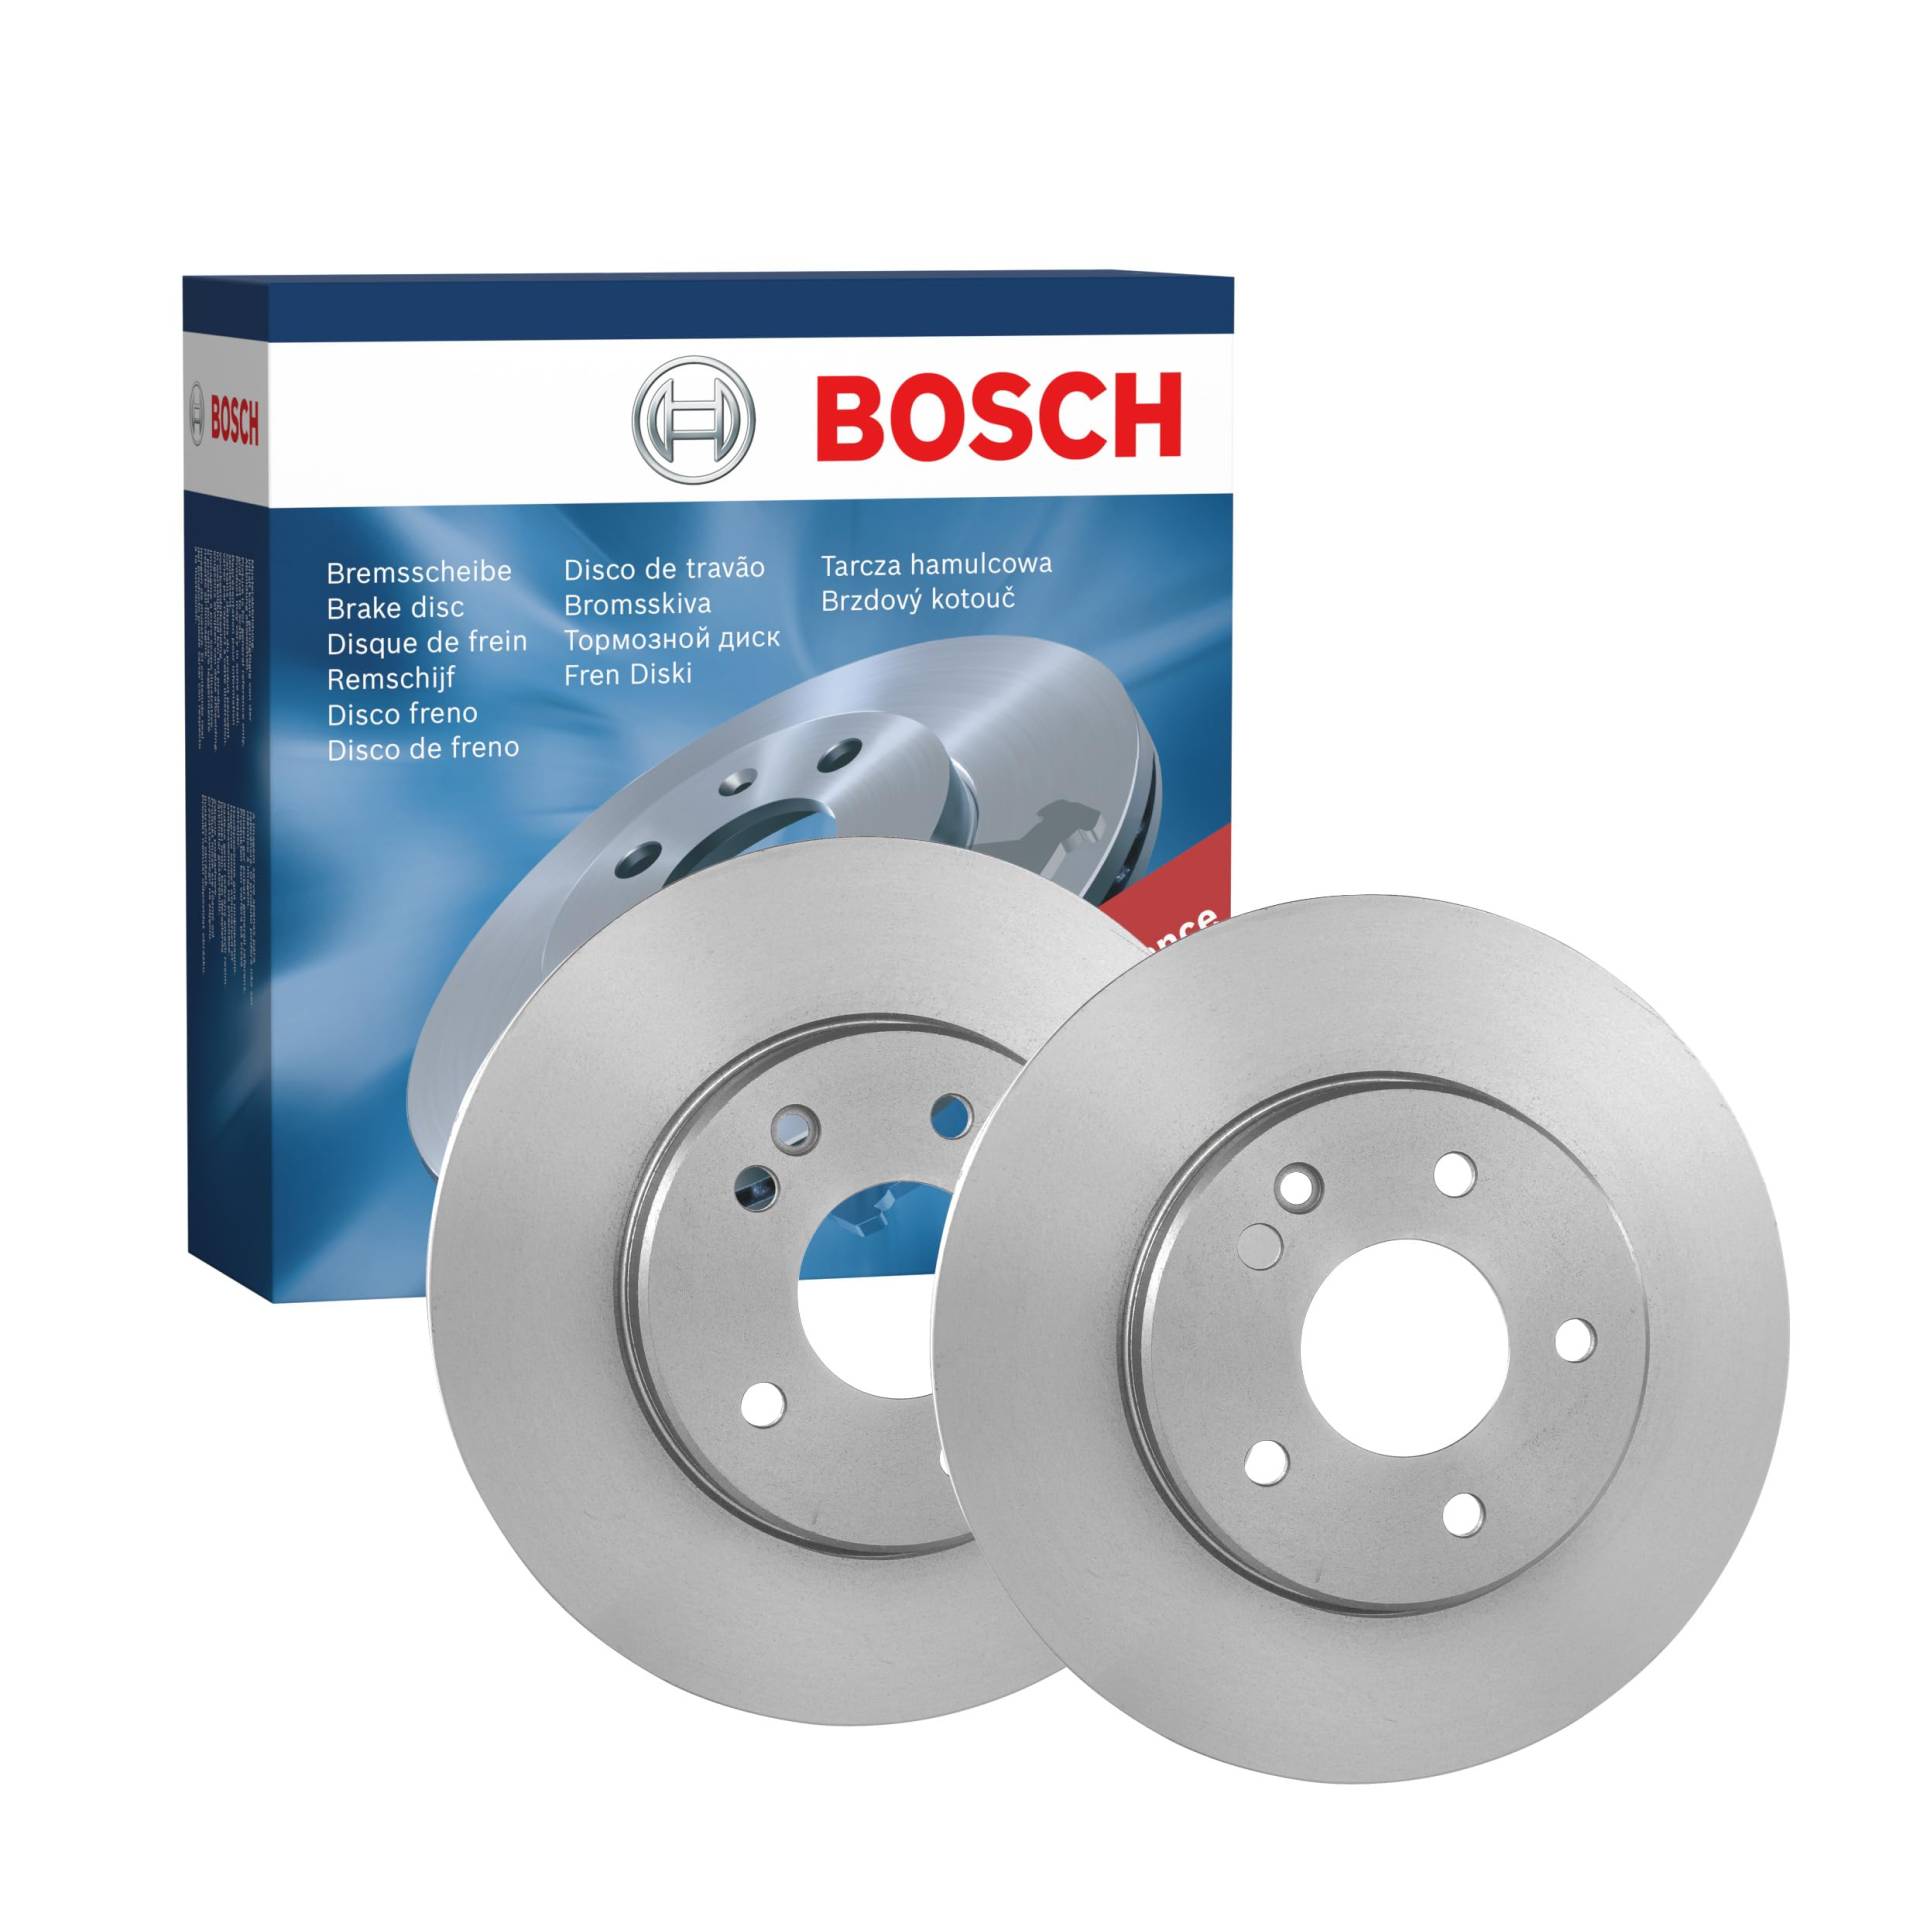 Bosch BD246 Bremsscheiben - Vorderachse - ECE-R90 Zertifizierung - zwei Bremsscheiben pro Set von Bosch Automotive